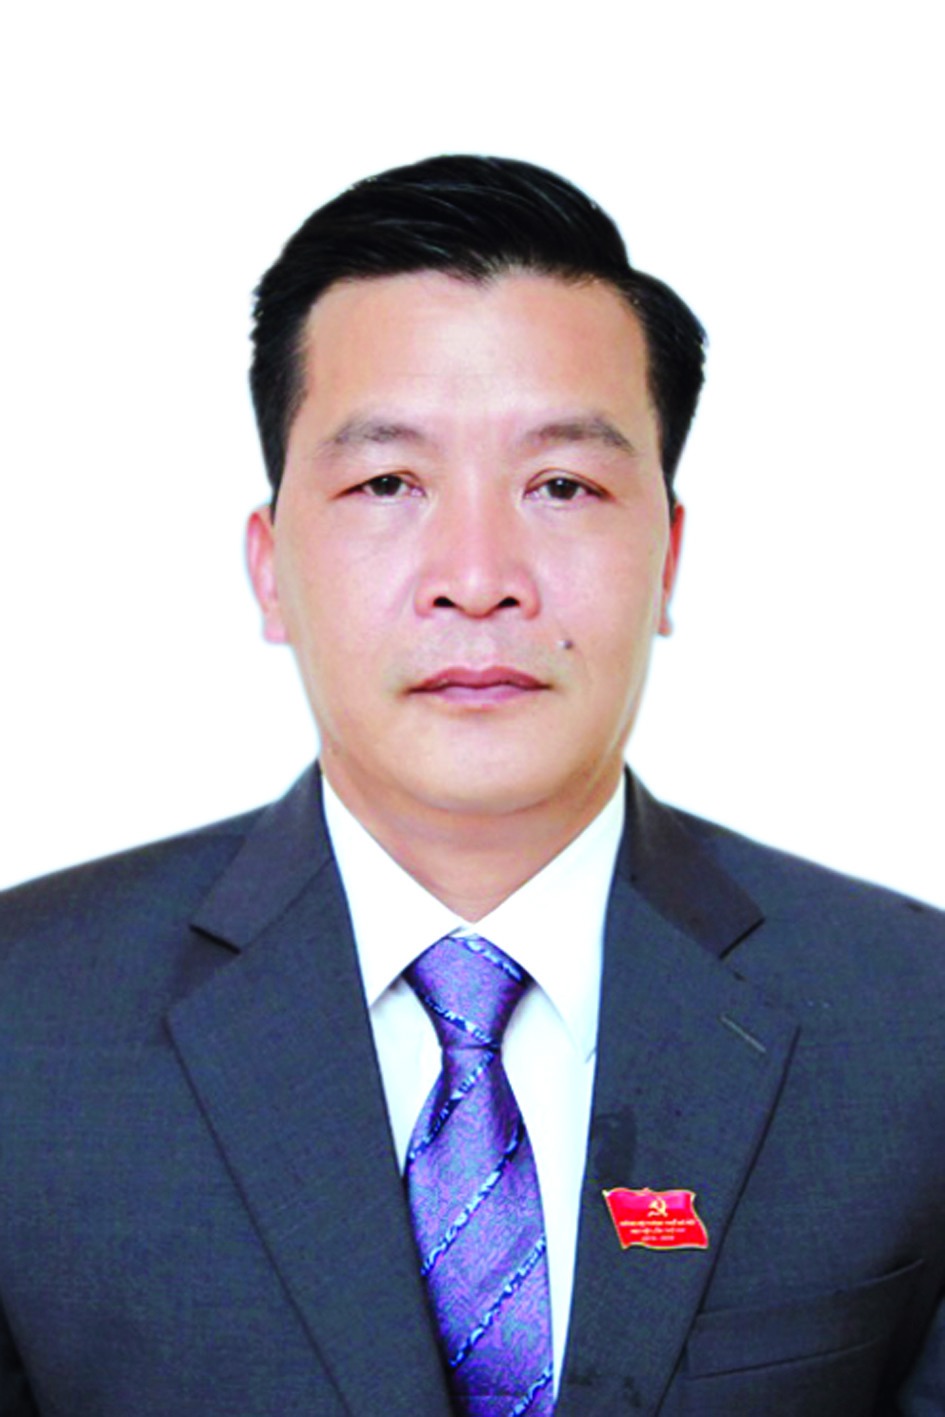 Chương trình hành động của Bí thư Huyện ủy Đông Anh Nguyễn Trung Kiên, ứng cử viên đại biểu HĐND TP Hà Nội nhiệm kỳ 2021 - 2026 - Ảnh 1